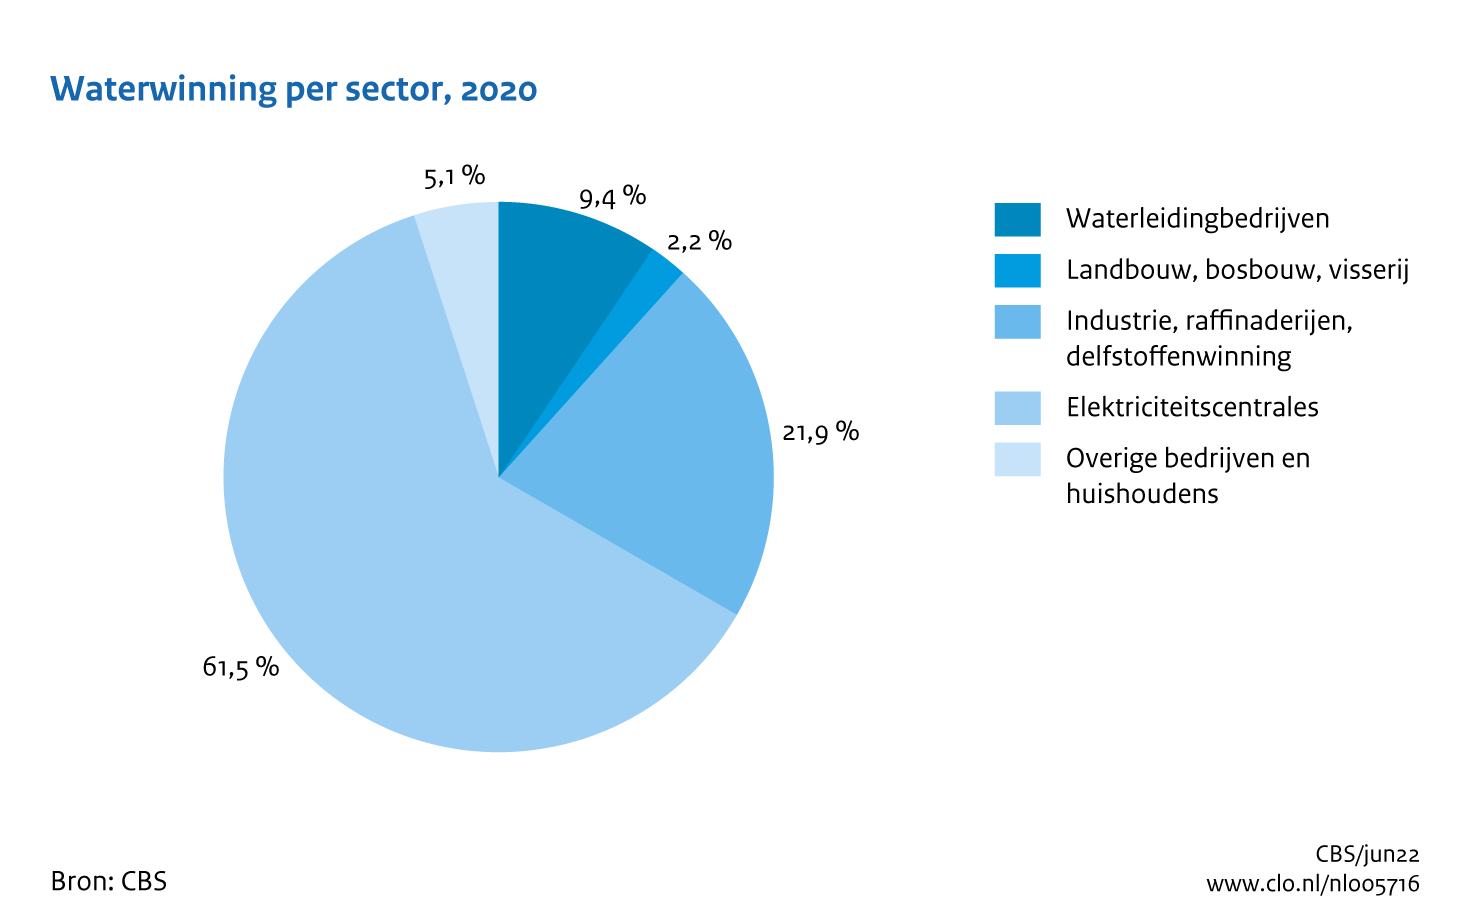 Figuur Waterwinning sectoren 2020. In de rest van de tekst wordt deze figuur uitgebreider uitgelegd.